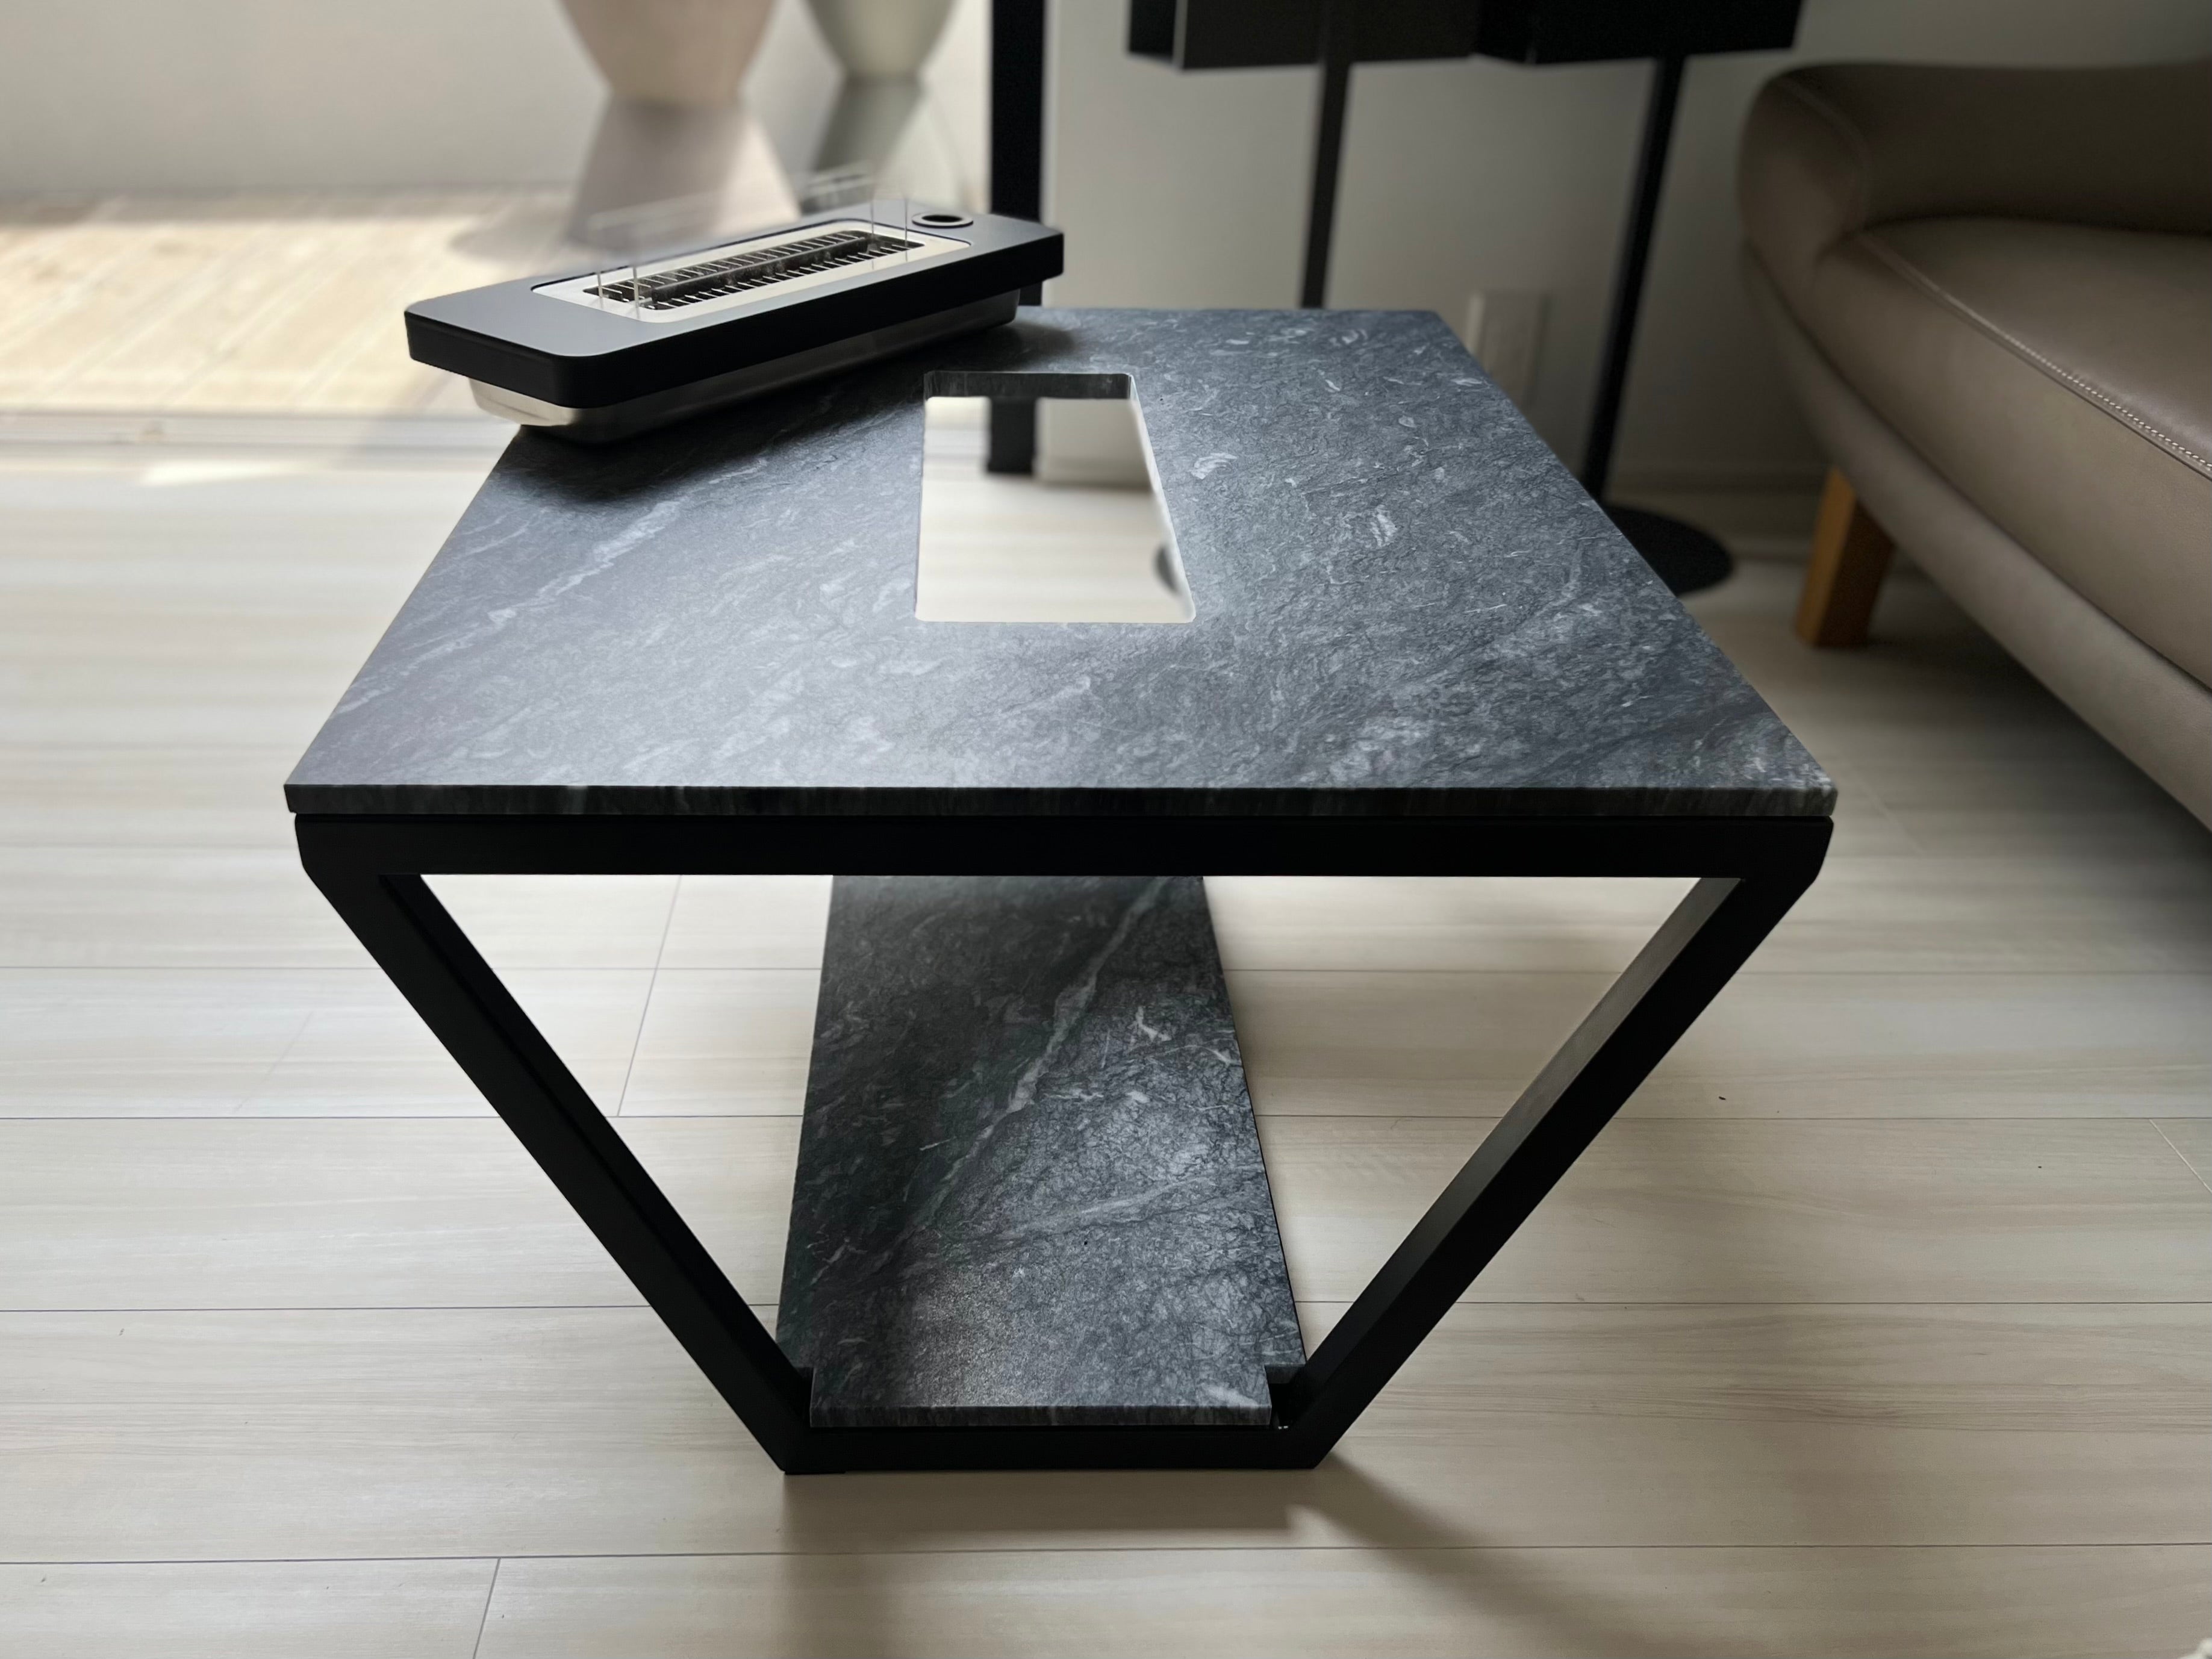 大理石テーブル机/テーブル